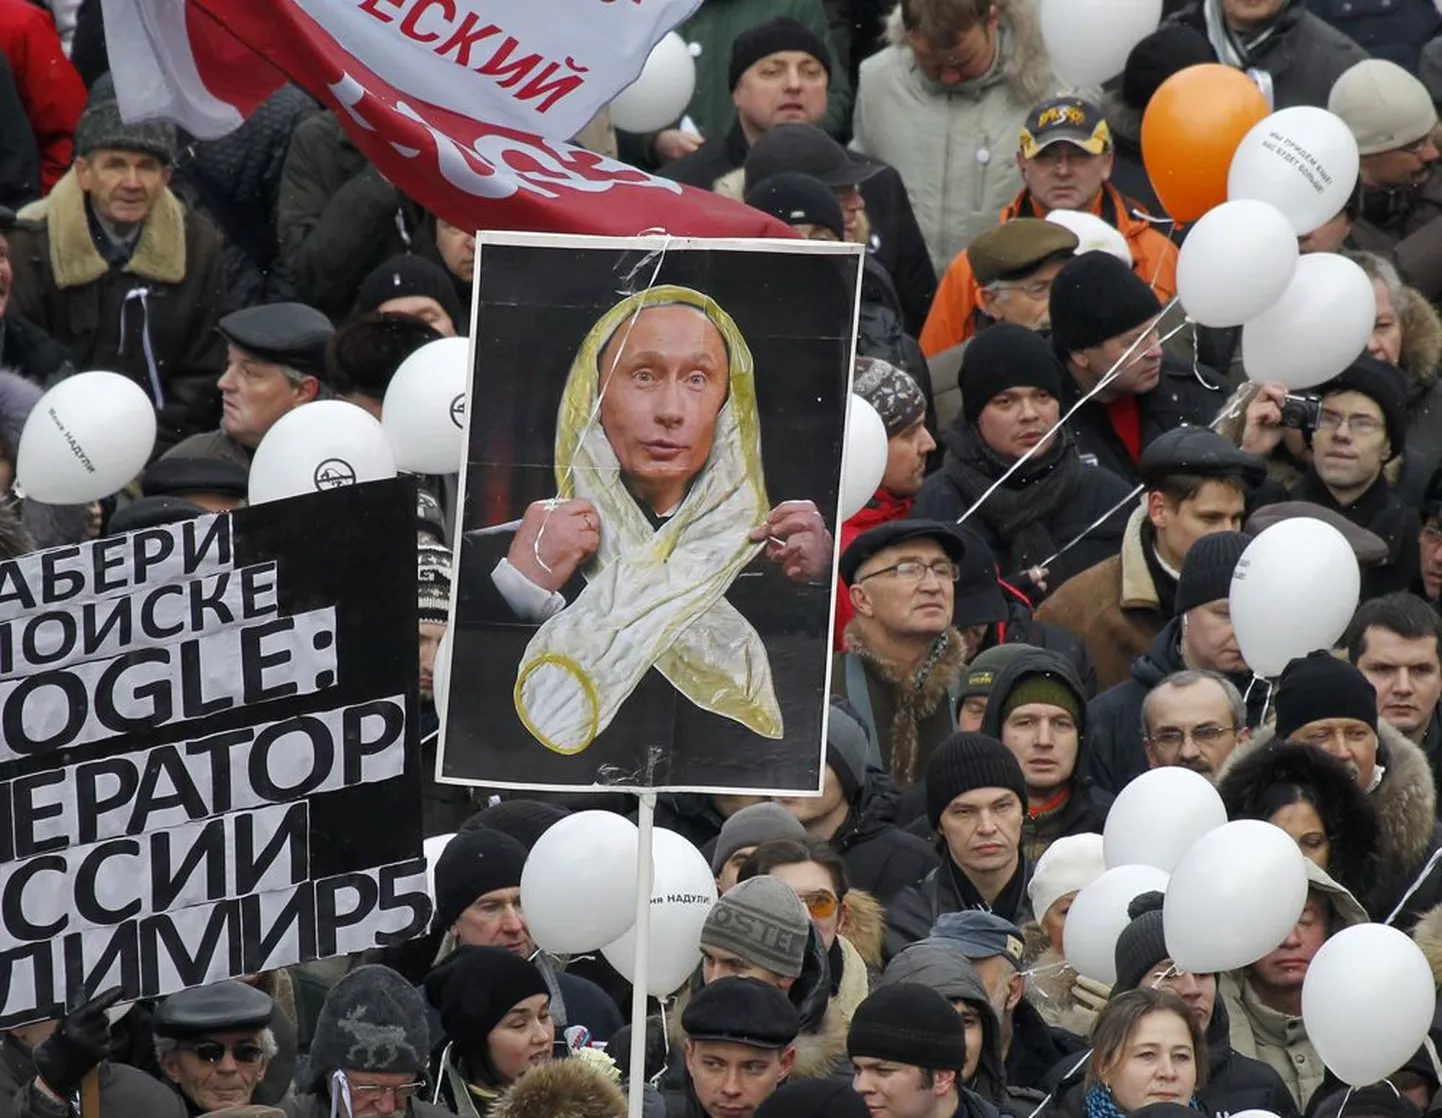 Vladimir Putini paari nädala tagune solvang, et meeleavaldajate protestisümboliteks saanud valged lindid meenutavad talle kasutatud kondoome, ajendas laupäevasel Moskva massimiitingul osalenuid senisest teravamalt Putinit mõnitama.